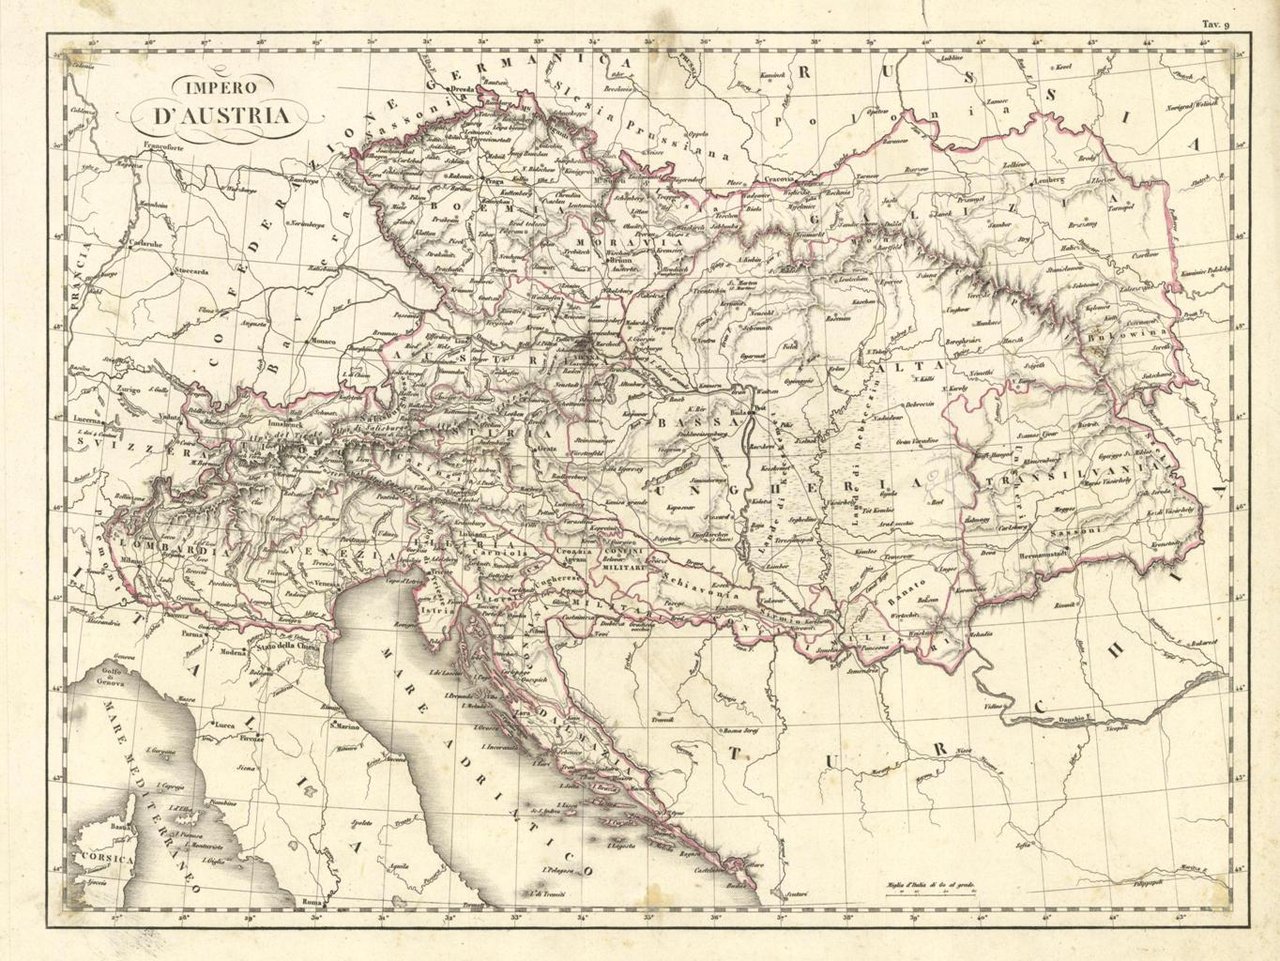 Impero d'Austria